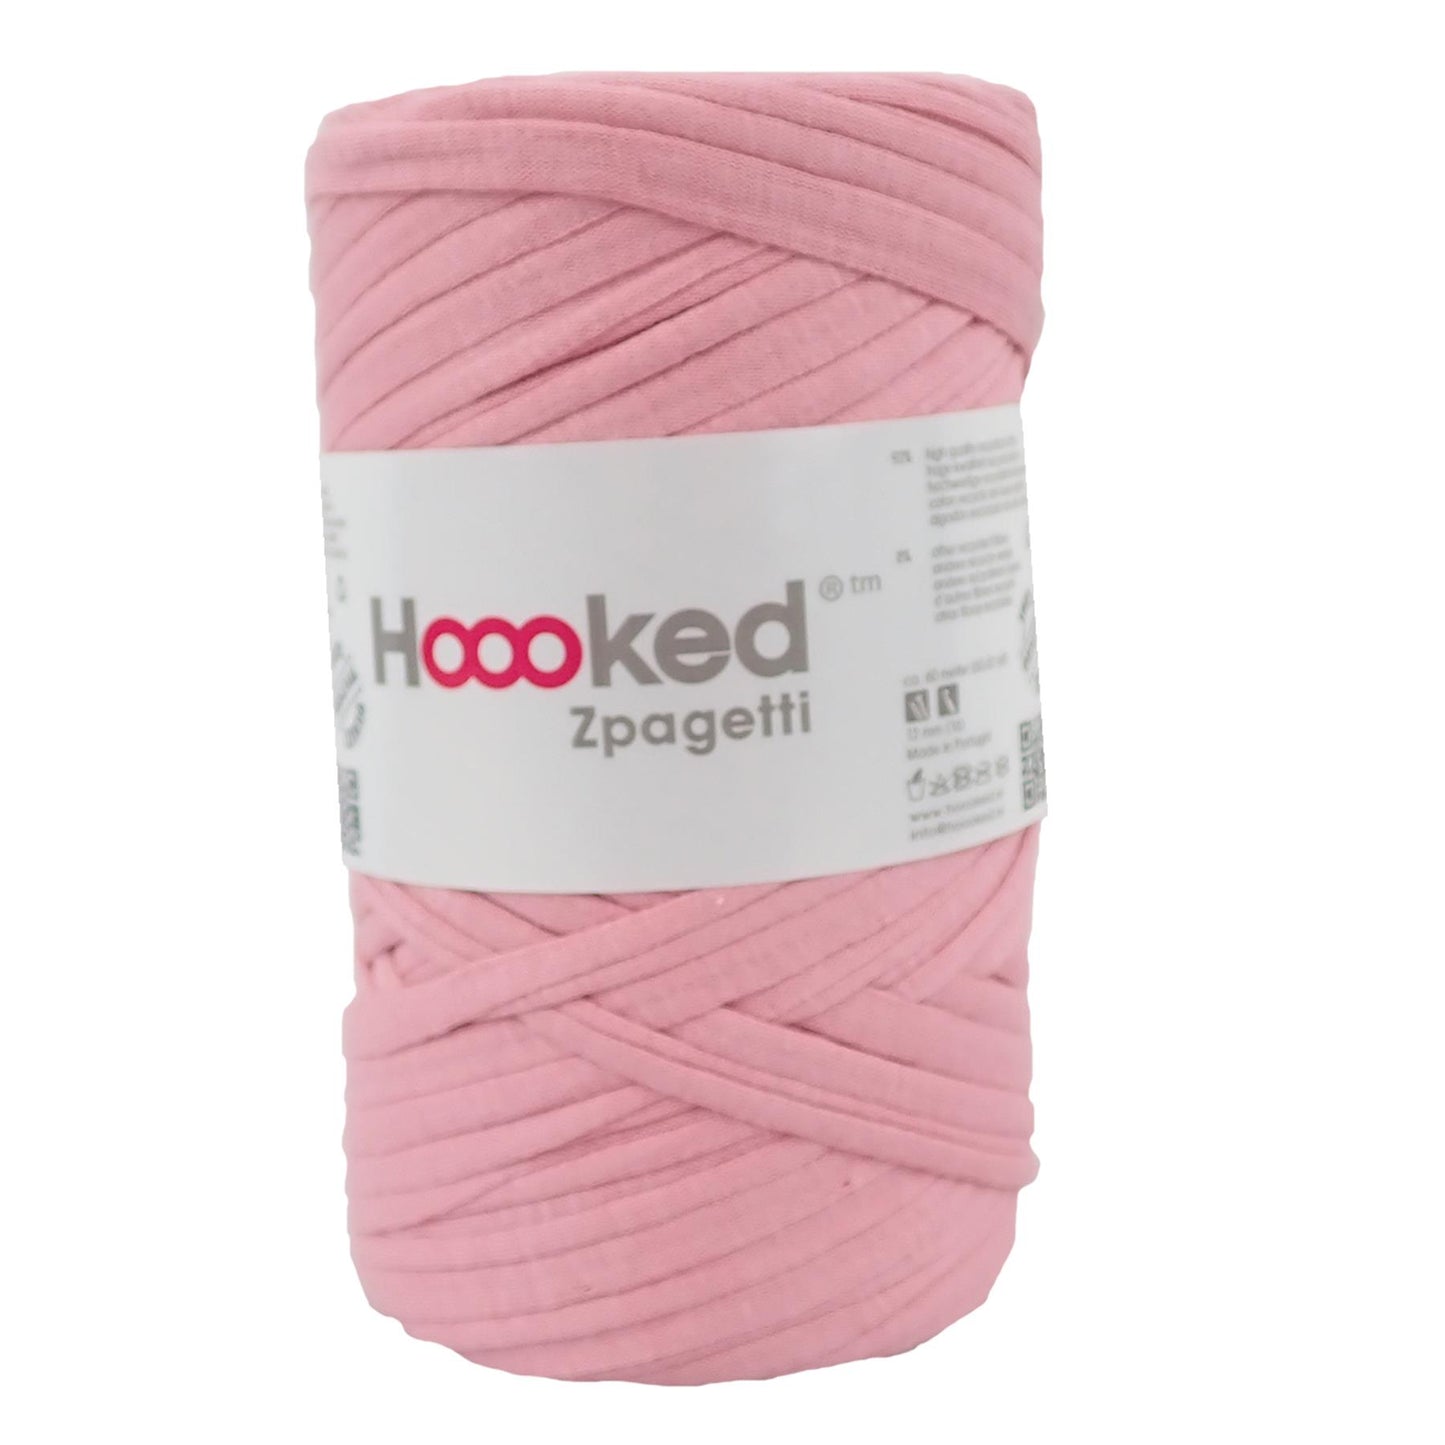 Hoooked Zpagetti Pink Cotton T-Shirt Yarn - 60M 350g